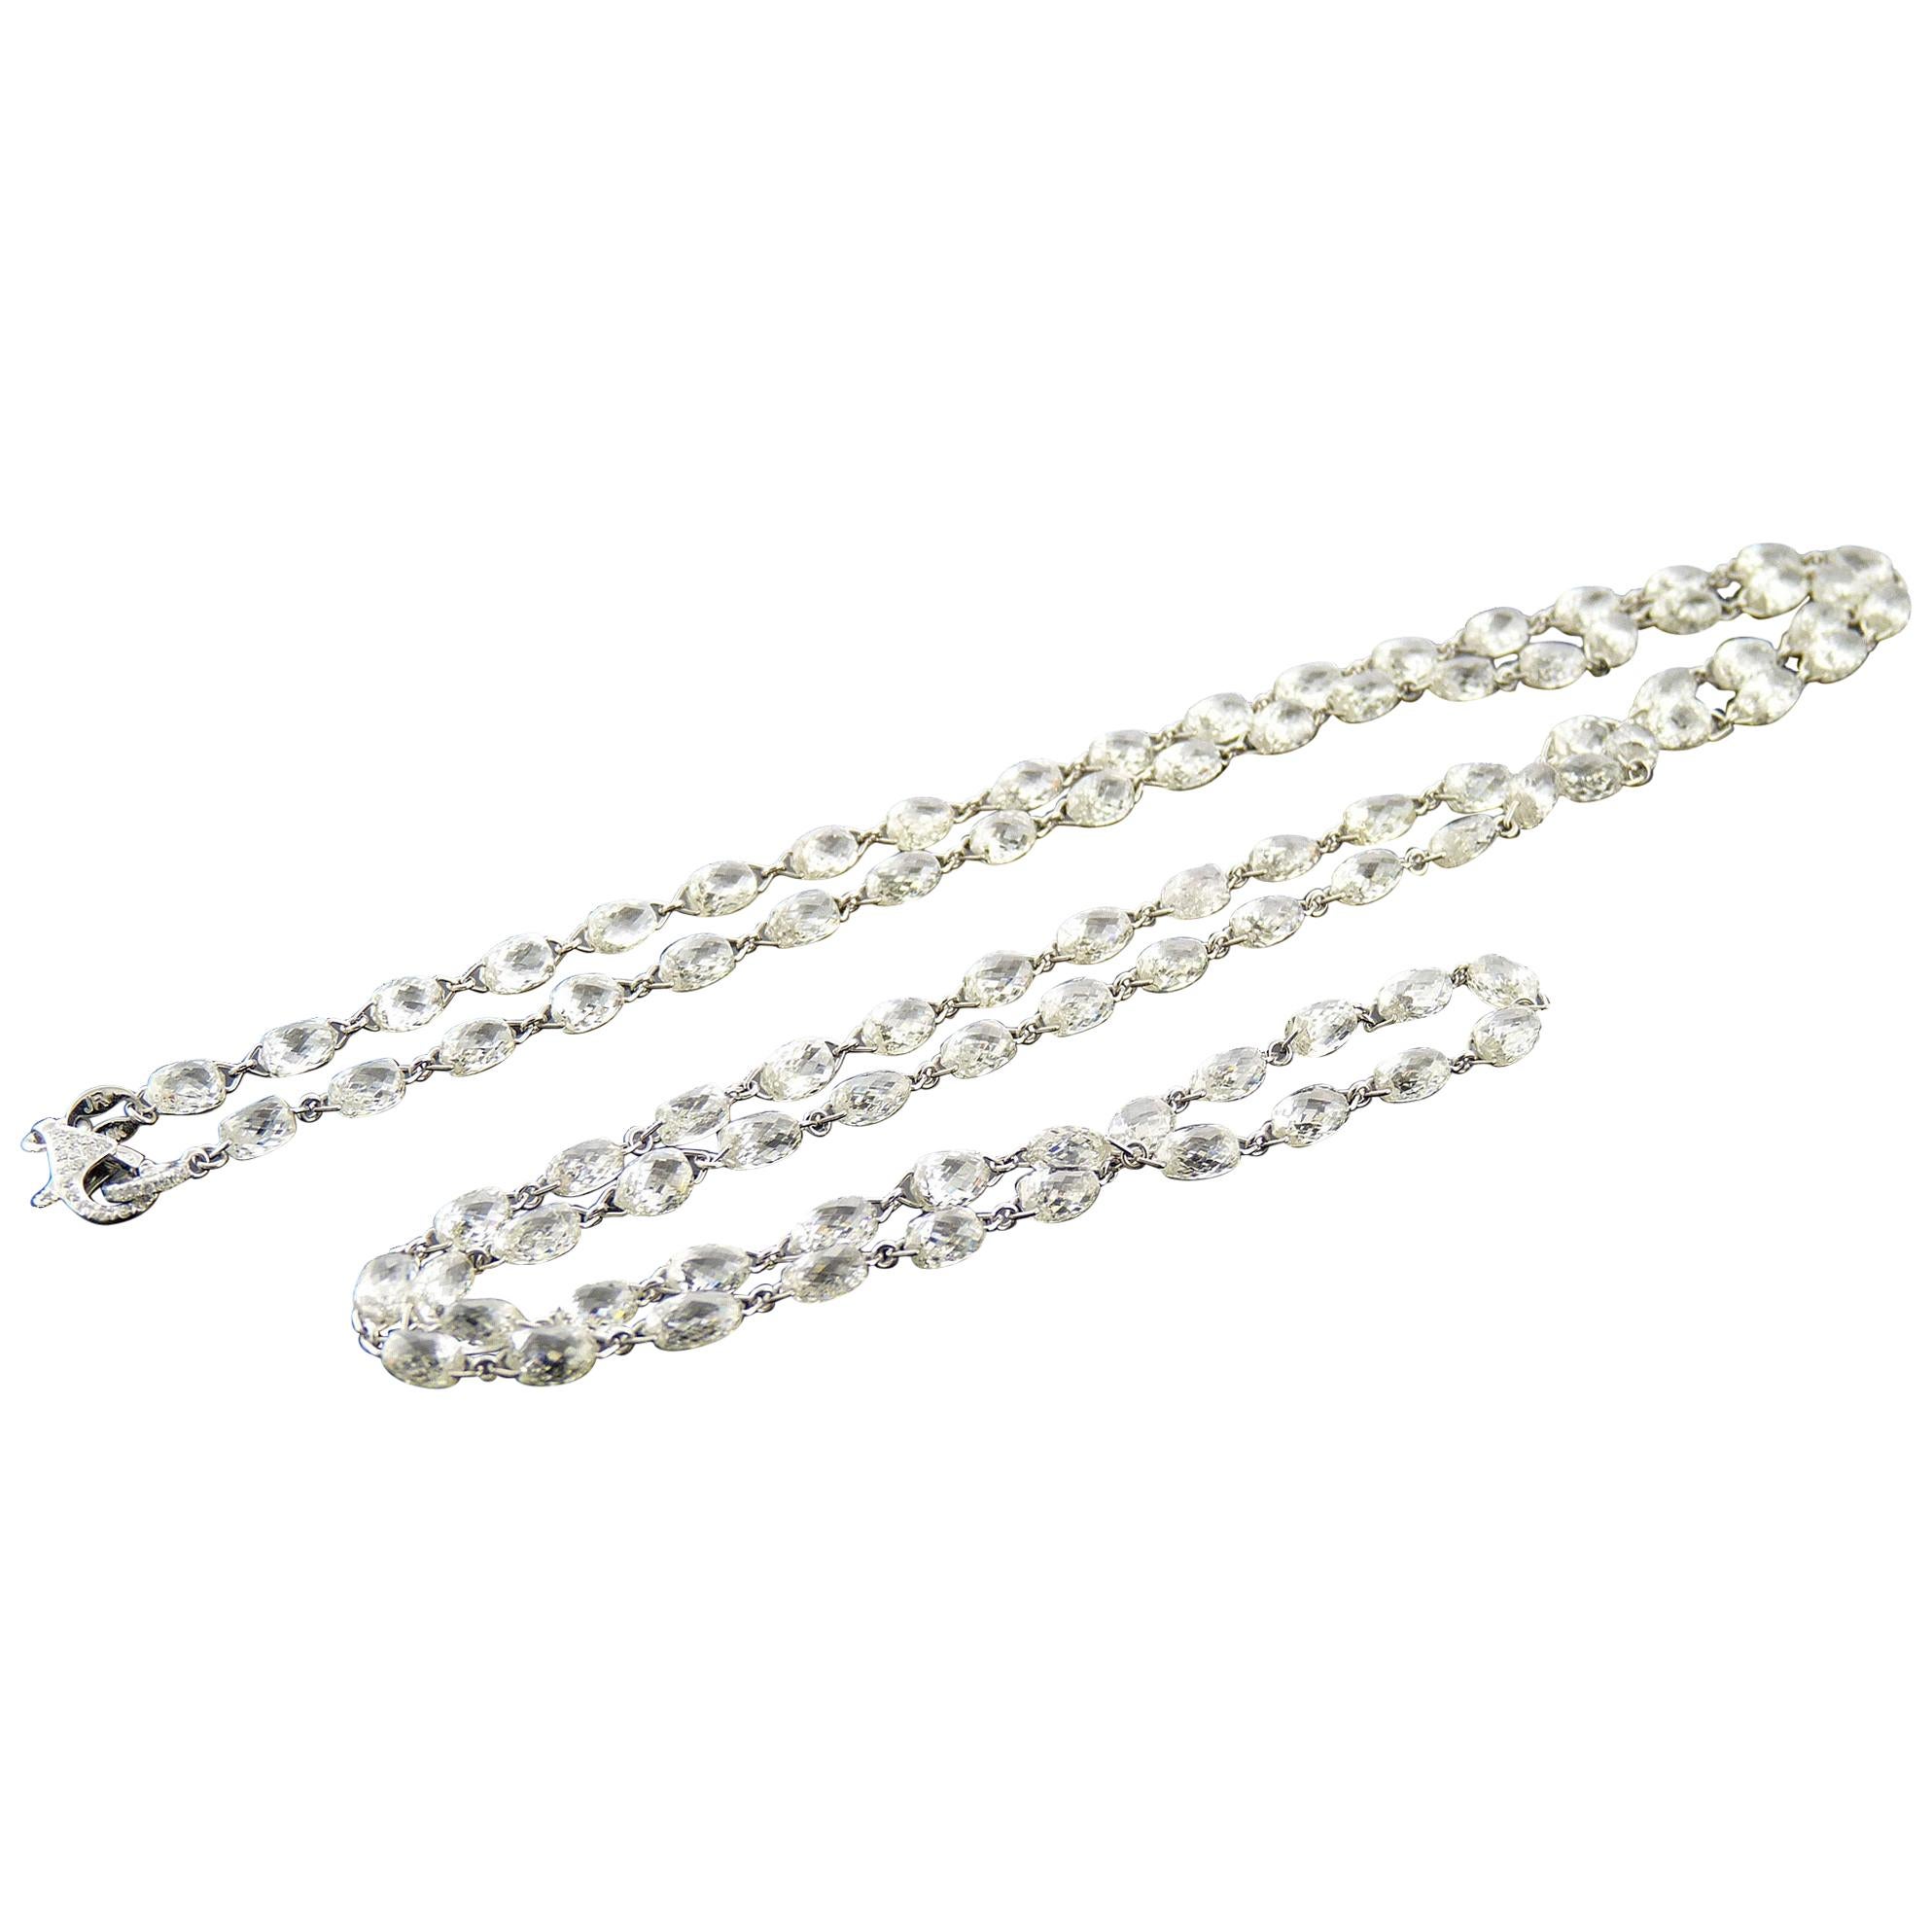 PANIM 57.08 Carat Briolette Diamond Link Necklace in 18Karat White Gold